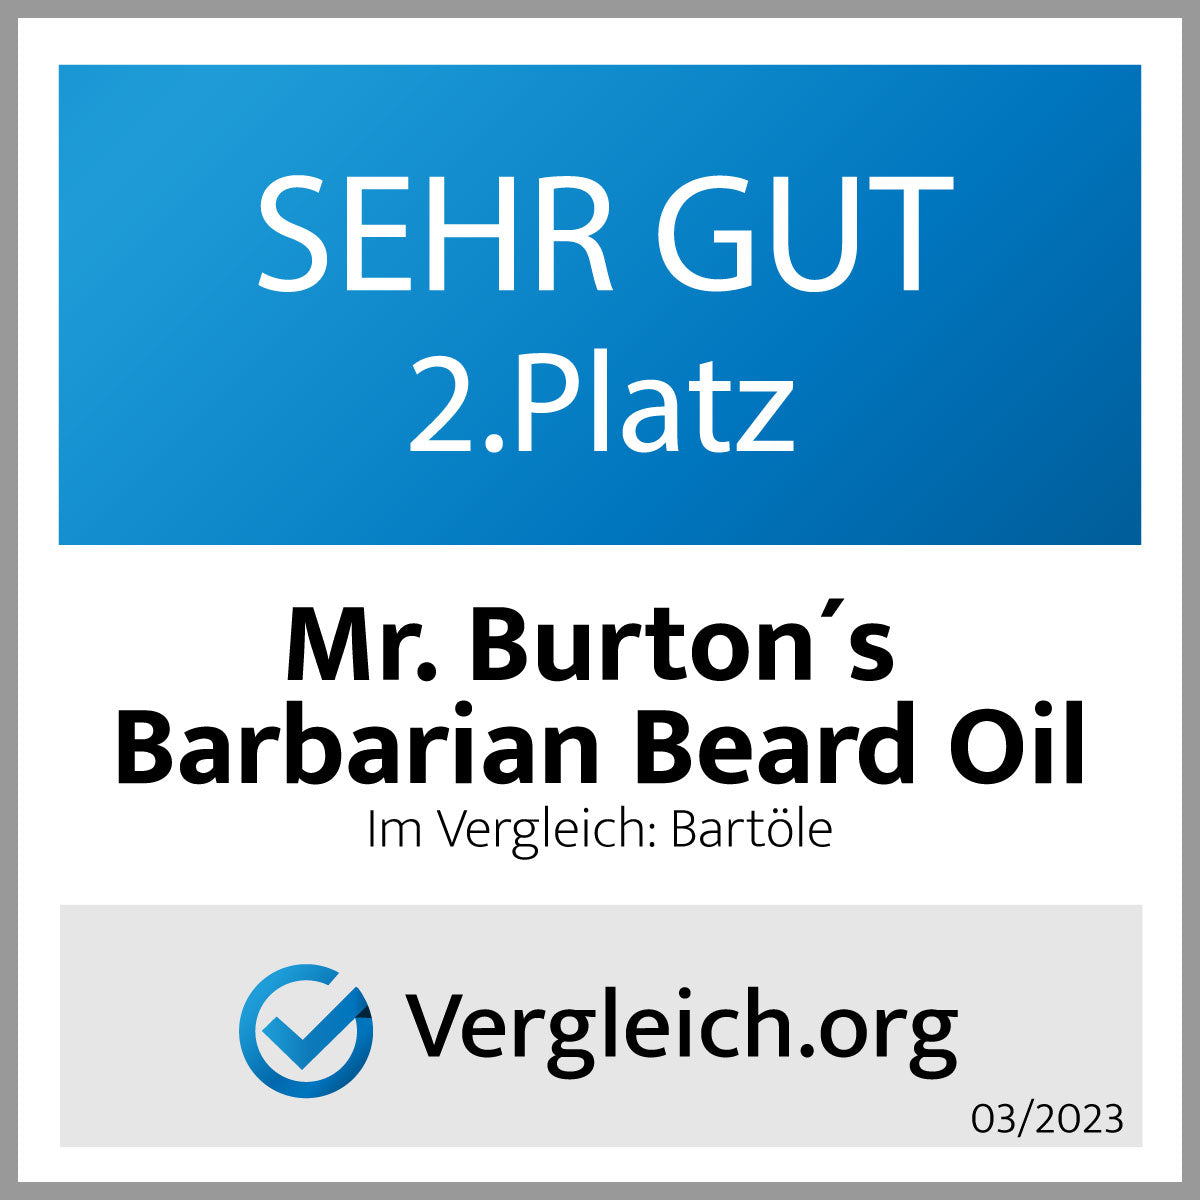 Barbarian Beard Oil - Duft: männlich-sinnlich-frisch mit Amber und Bergamotte - Made in Germany - vegan